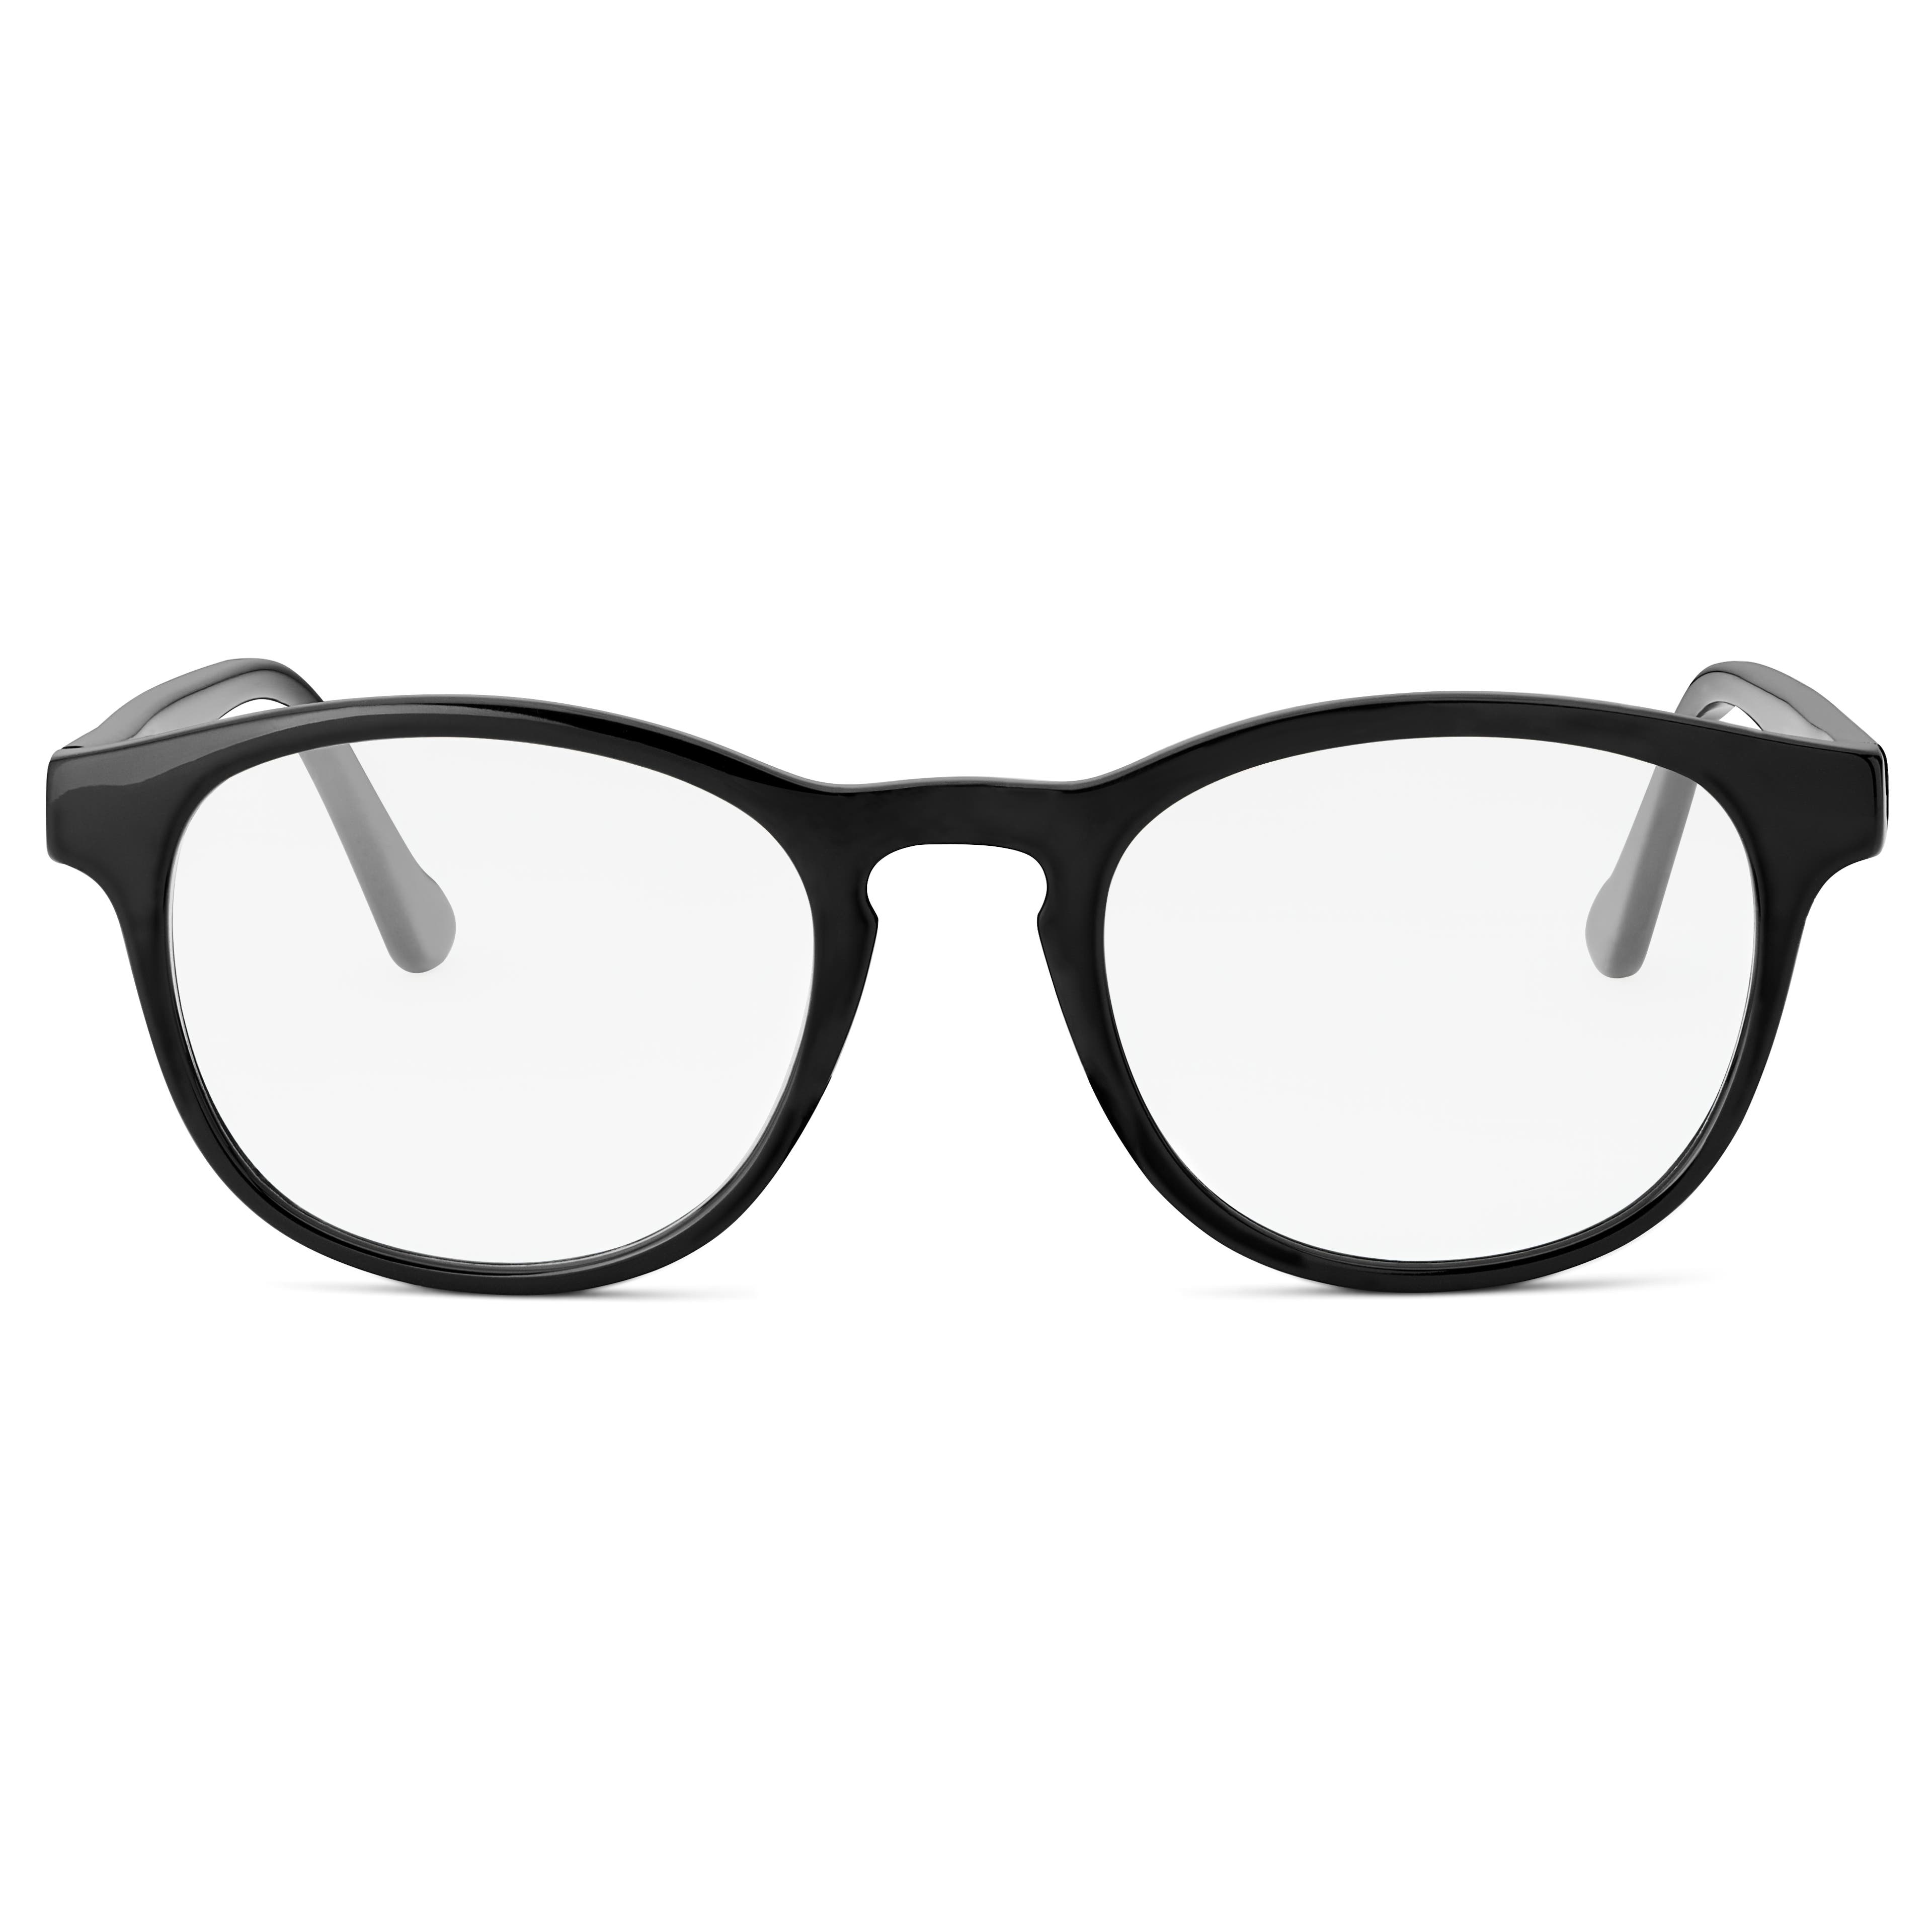 Μαύρα Γυαλιά με Διάφανους Φακούς Classic Blue Light Blocking